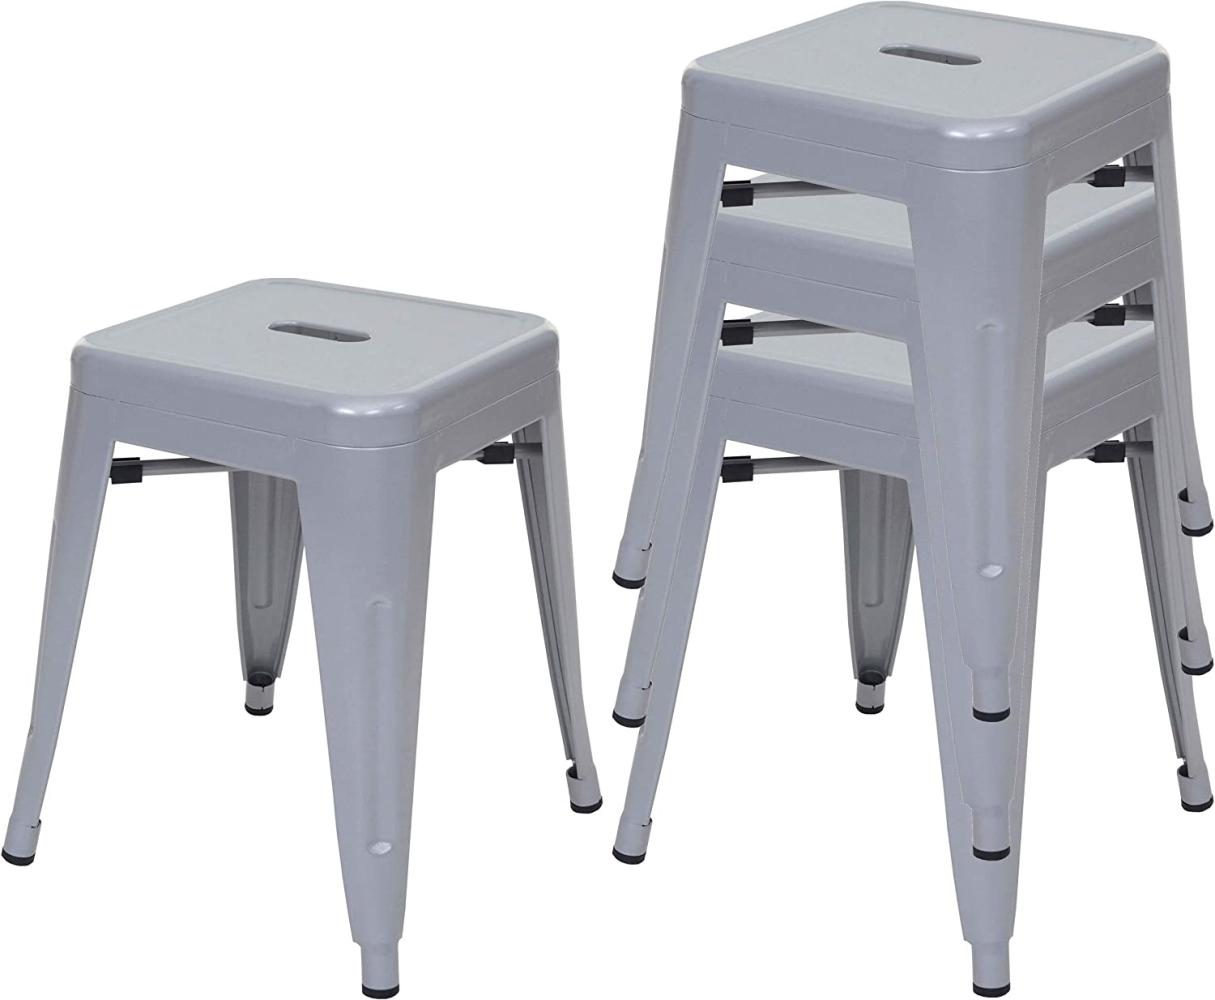 4er-Set Hocker HWC-A73, Metallhocker Sitzhocker, Metall Industriedesign stapelbar ~ grau Bild 1